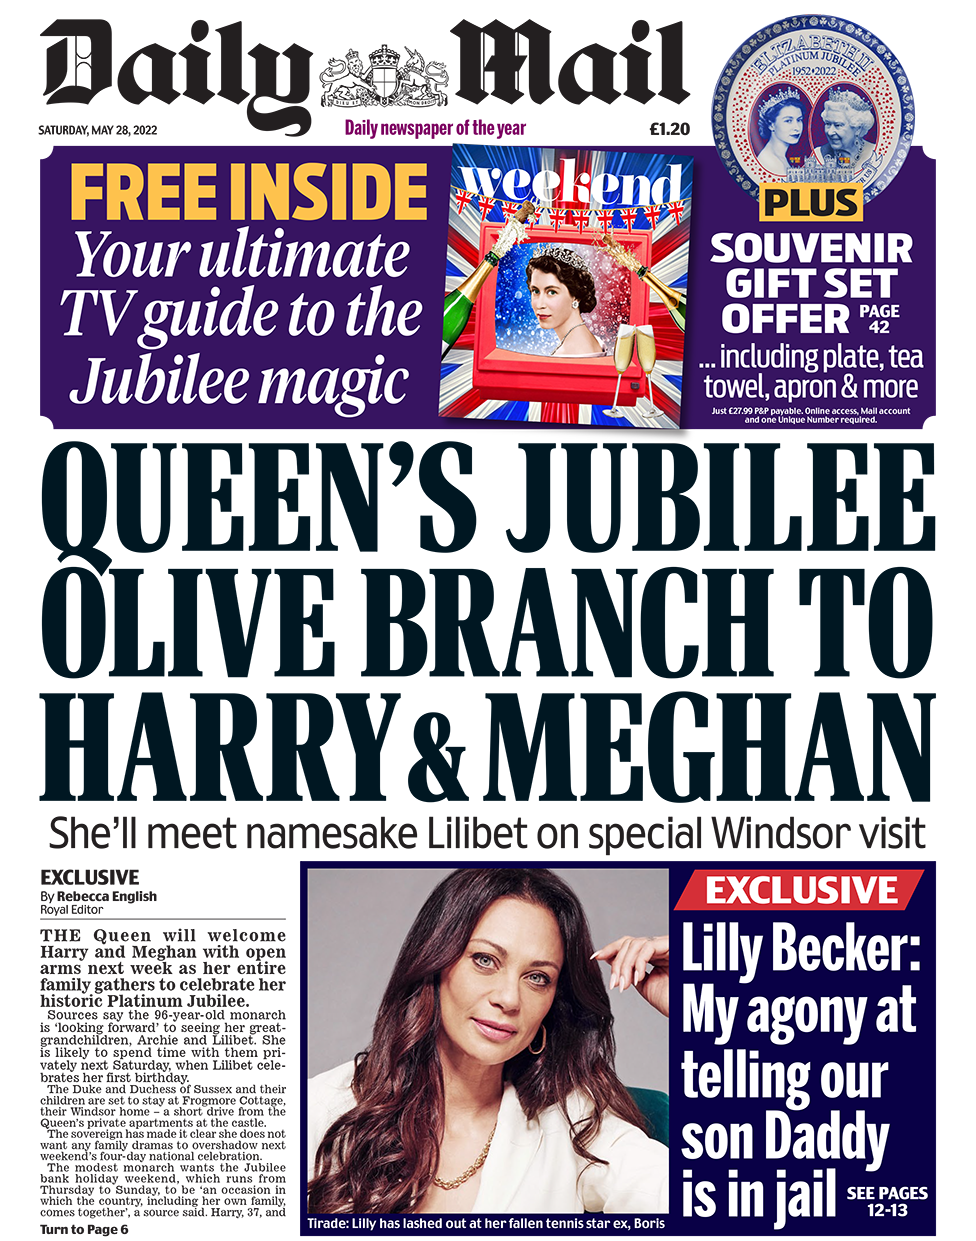 Заголовок в Mail гласит: «Юбилейная оливковая ветвь королевы Гарри и Меган».